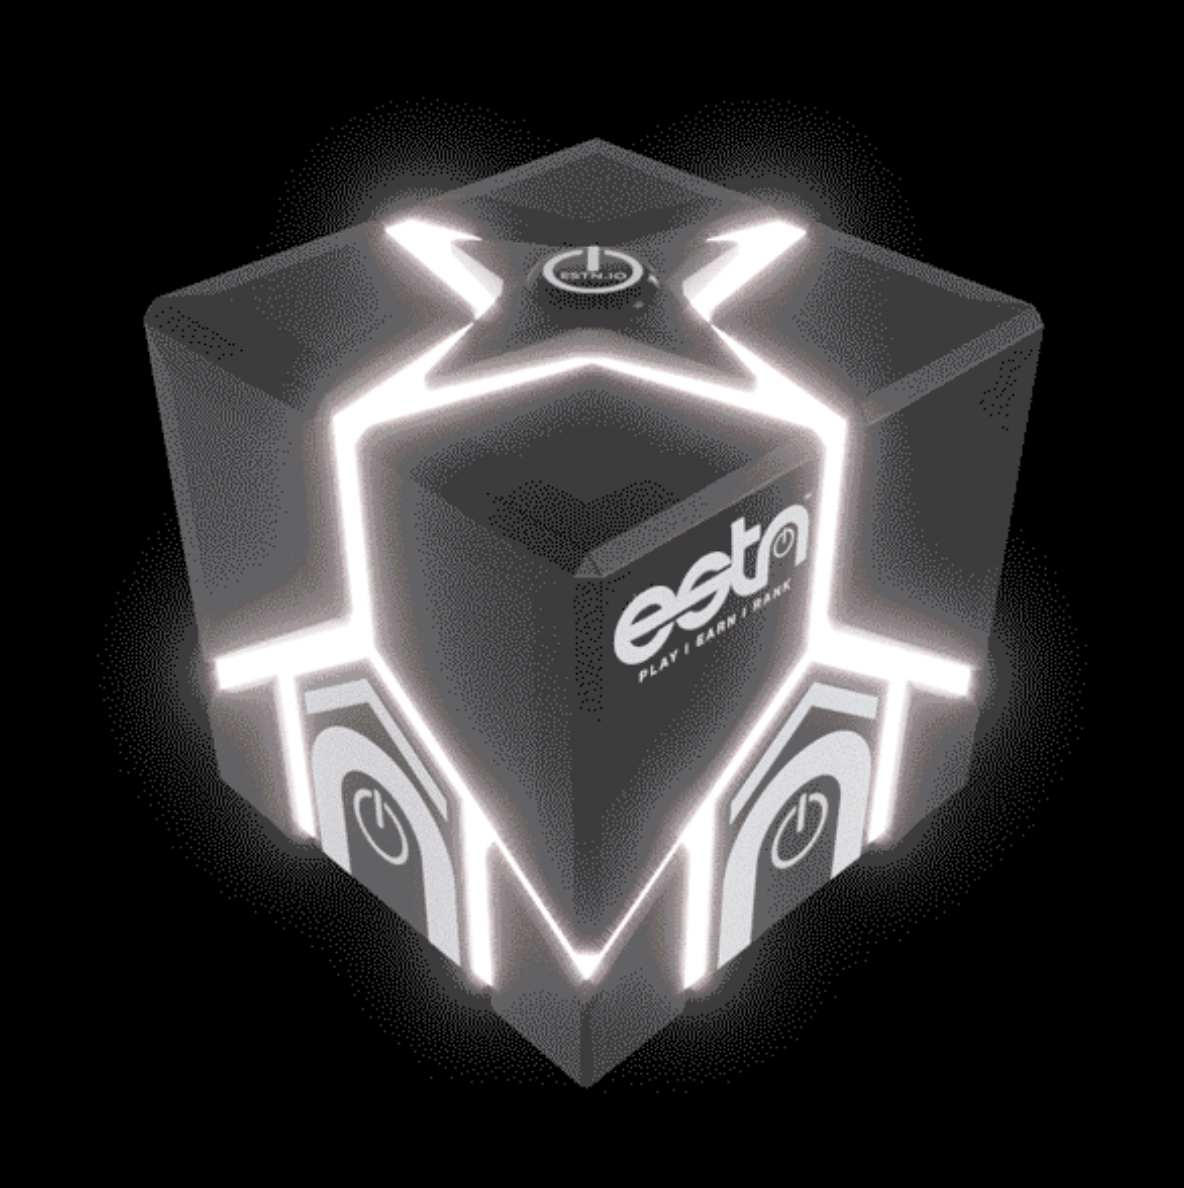 ESTN announces the launch of Vault Box